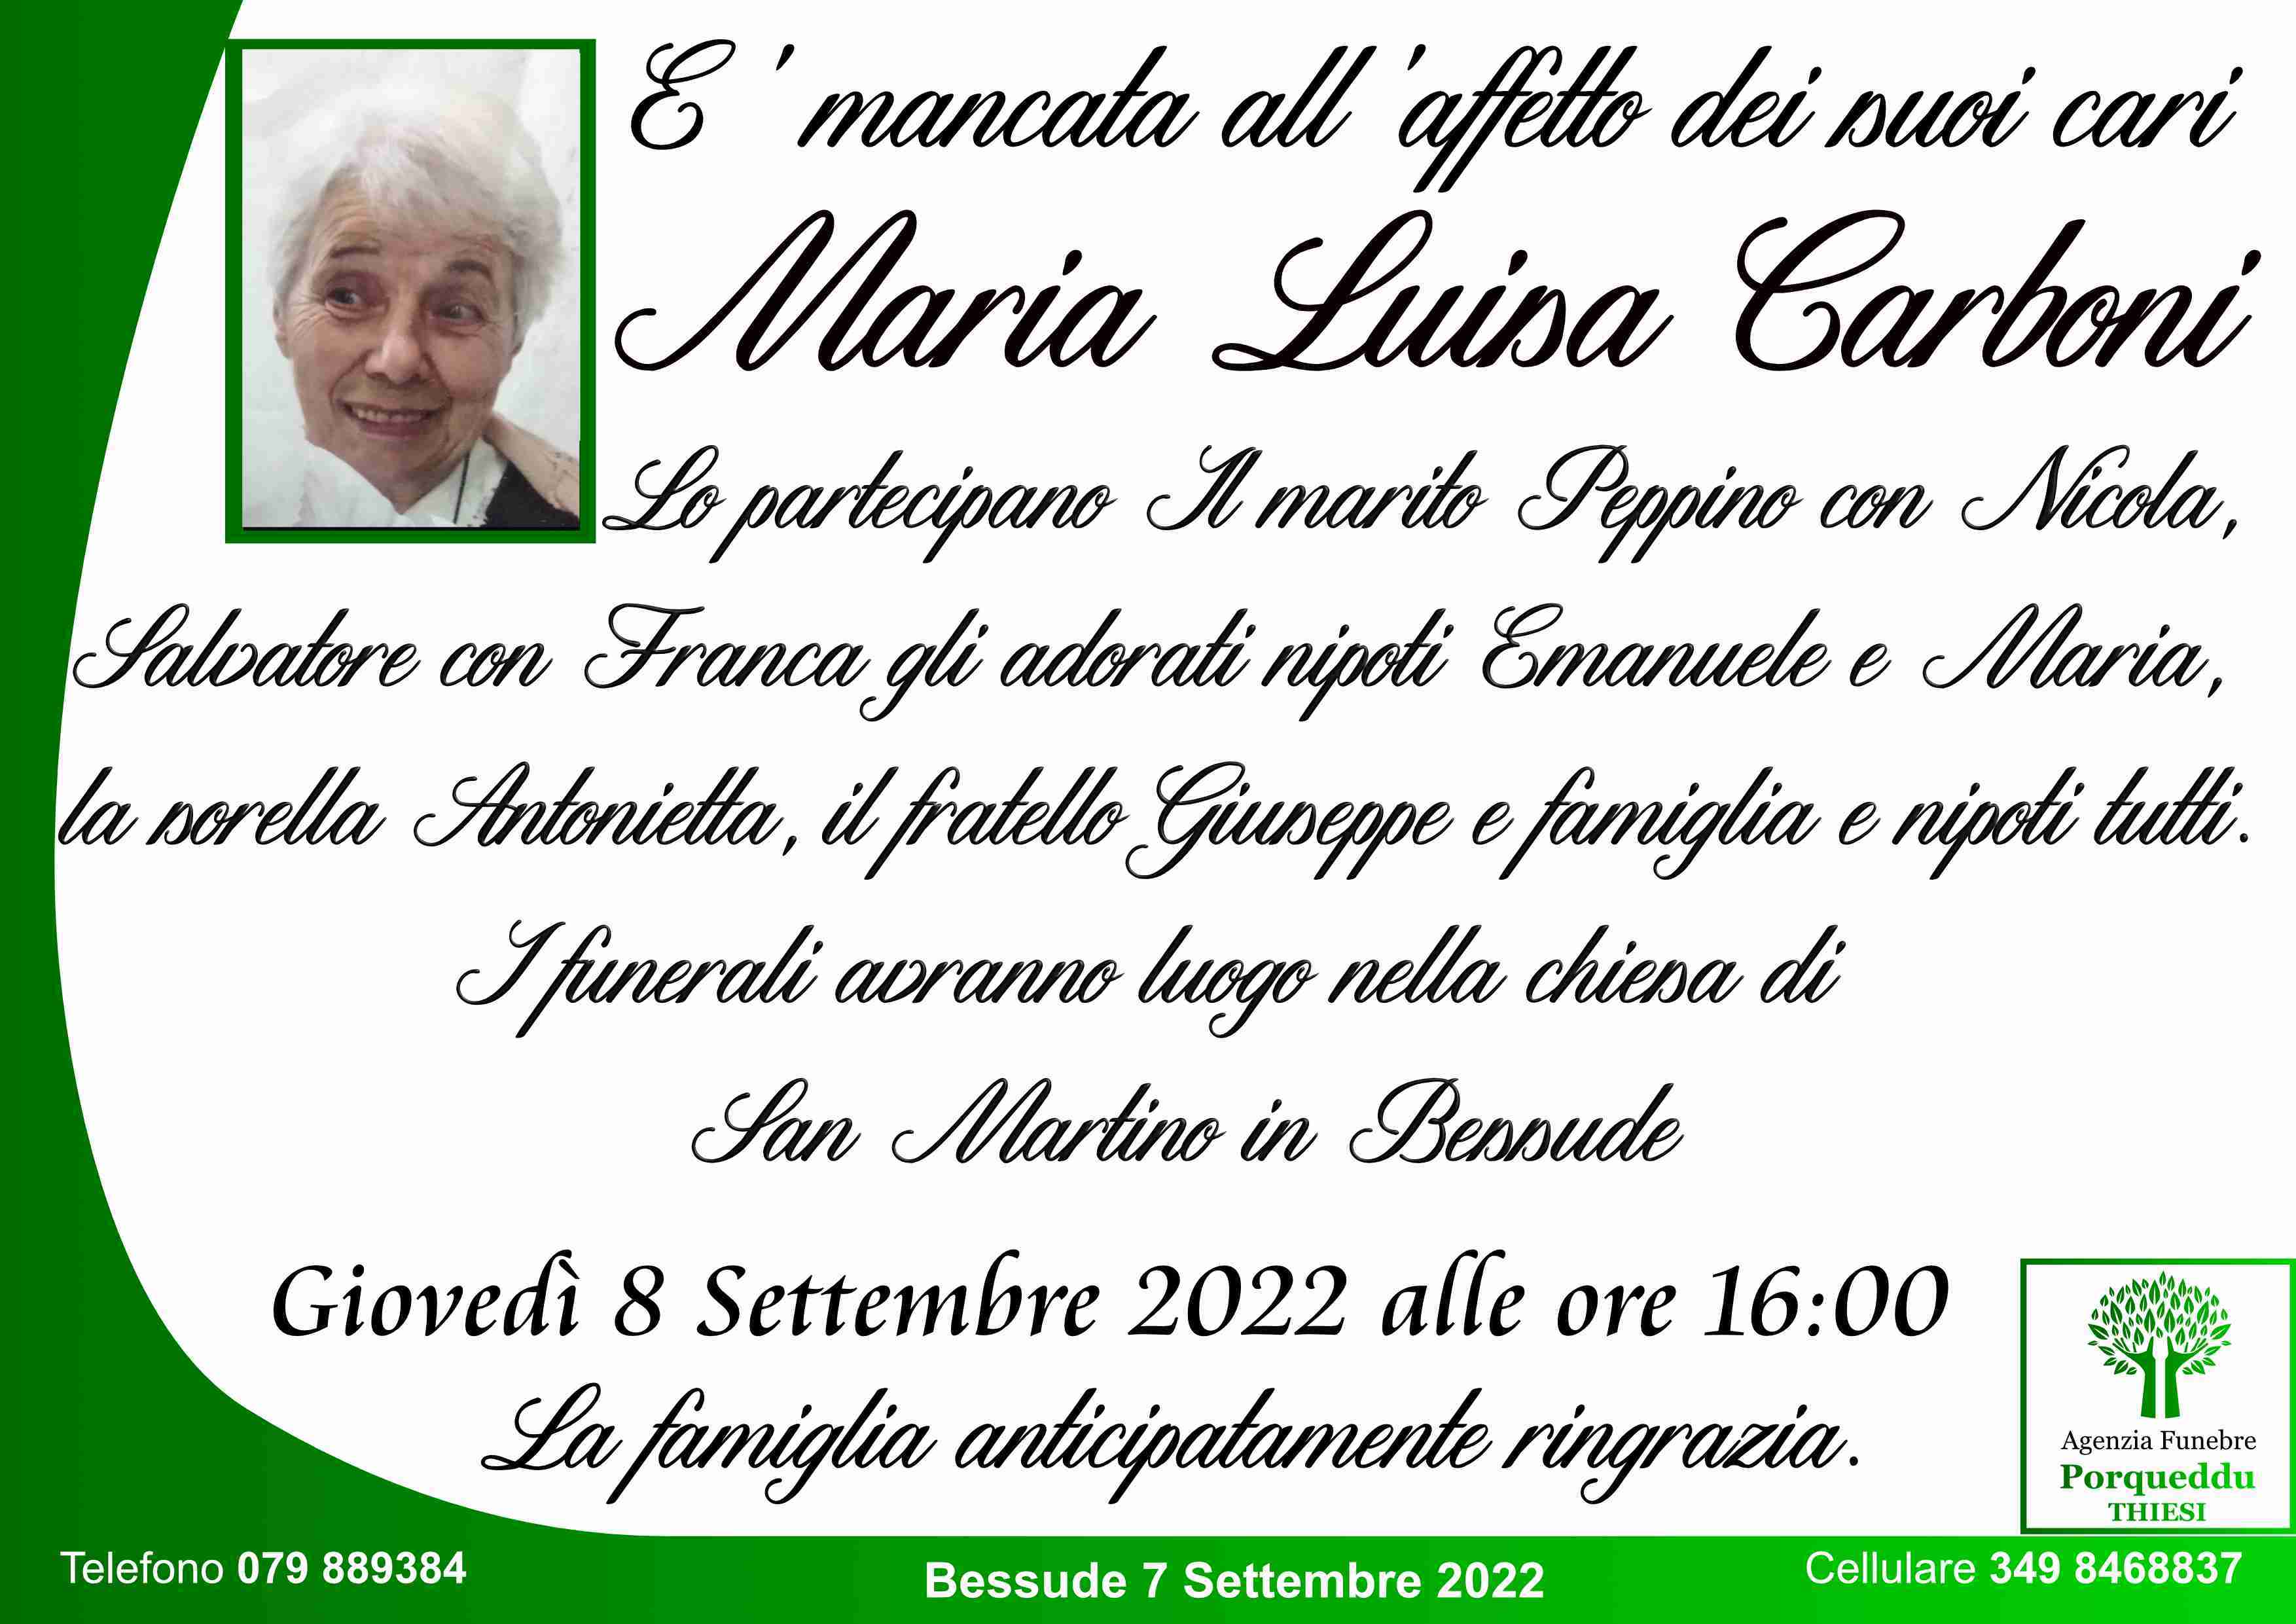 Maria Luisa Carboni